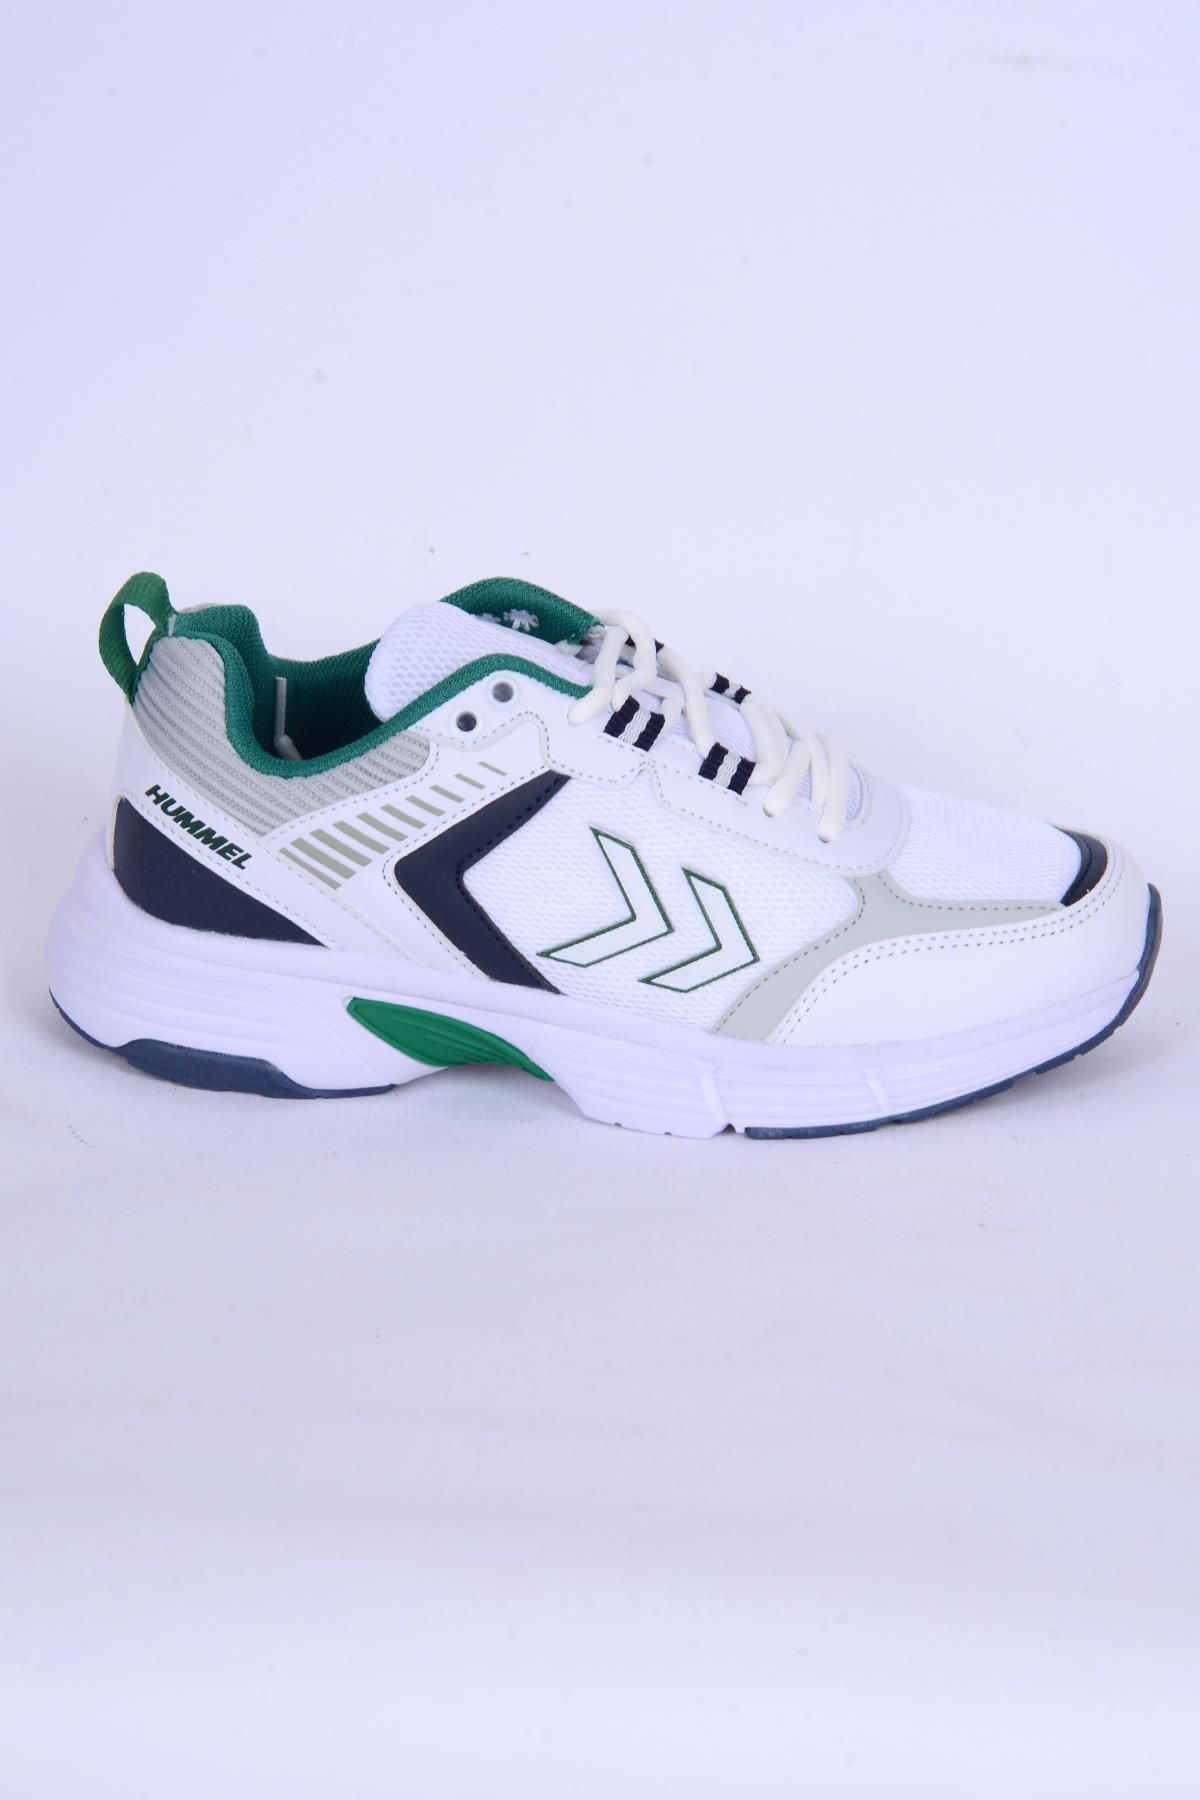 hummel 900362-9208 Hml Pera Beyaz-yeşil Kadın Spor Ayakkabı